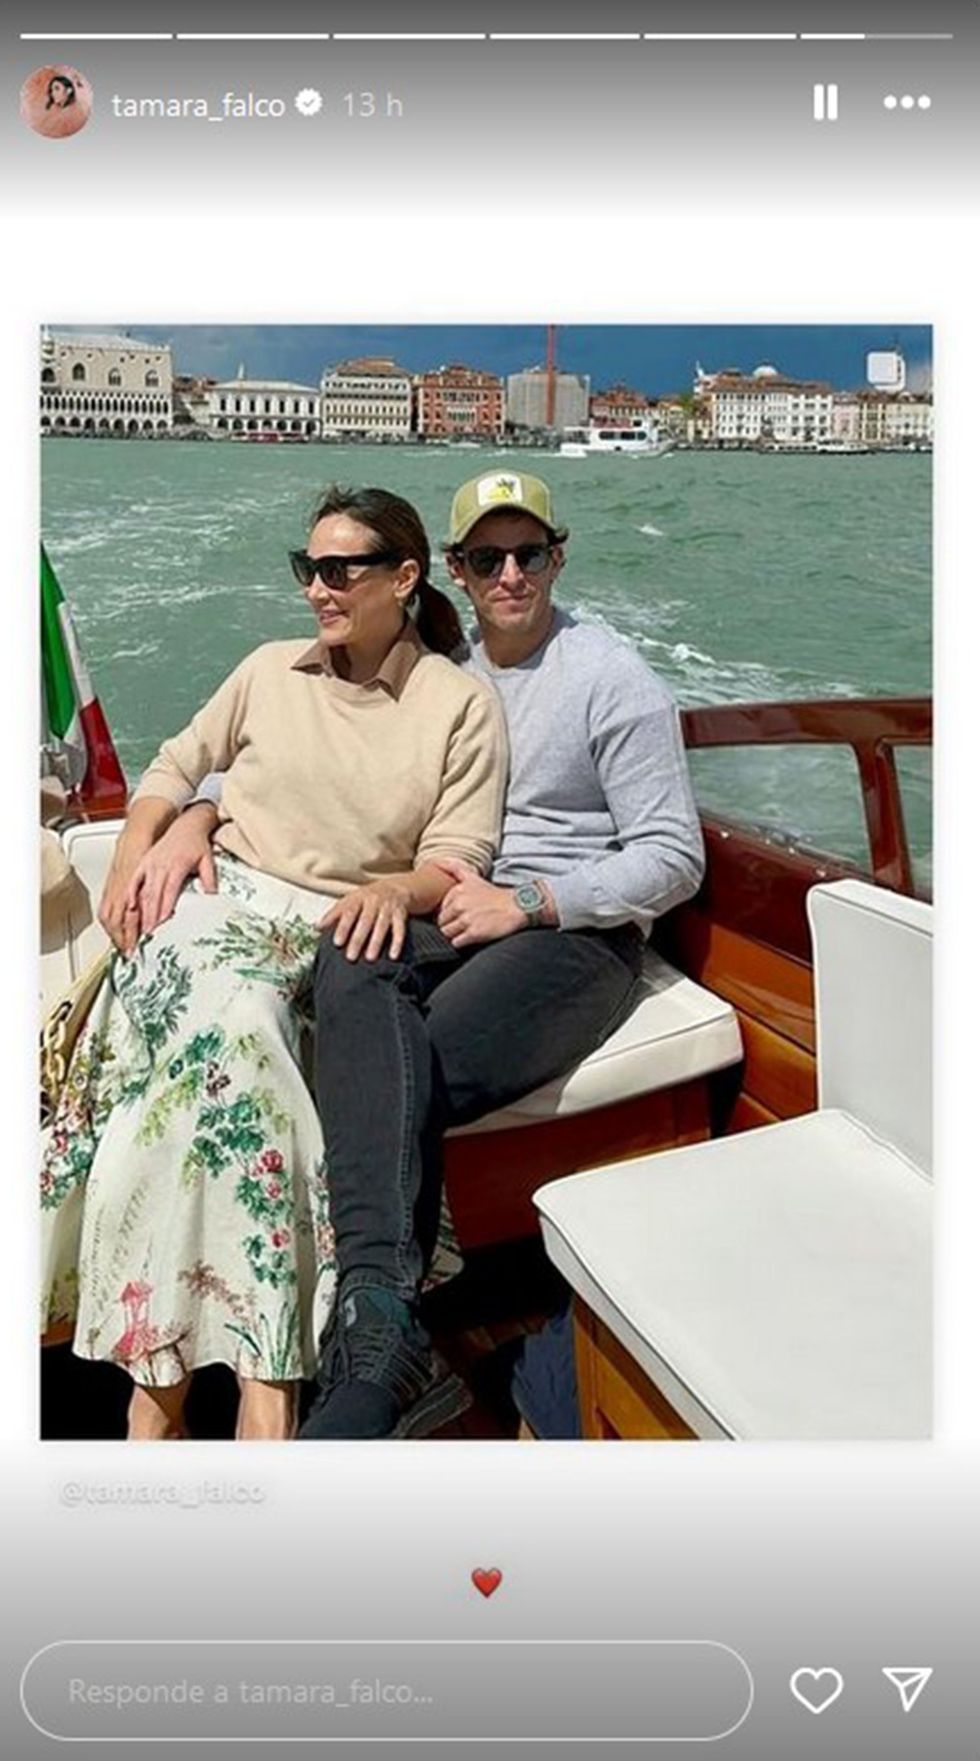 la pareja en una embarcacion recorriendo los canales de la ciudad italiana